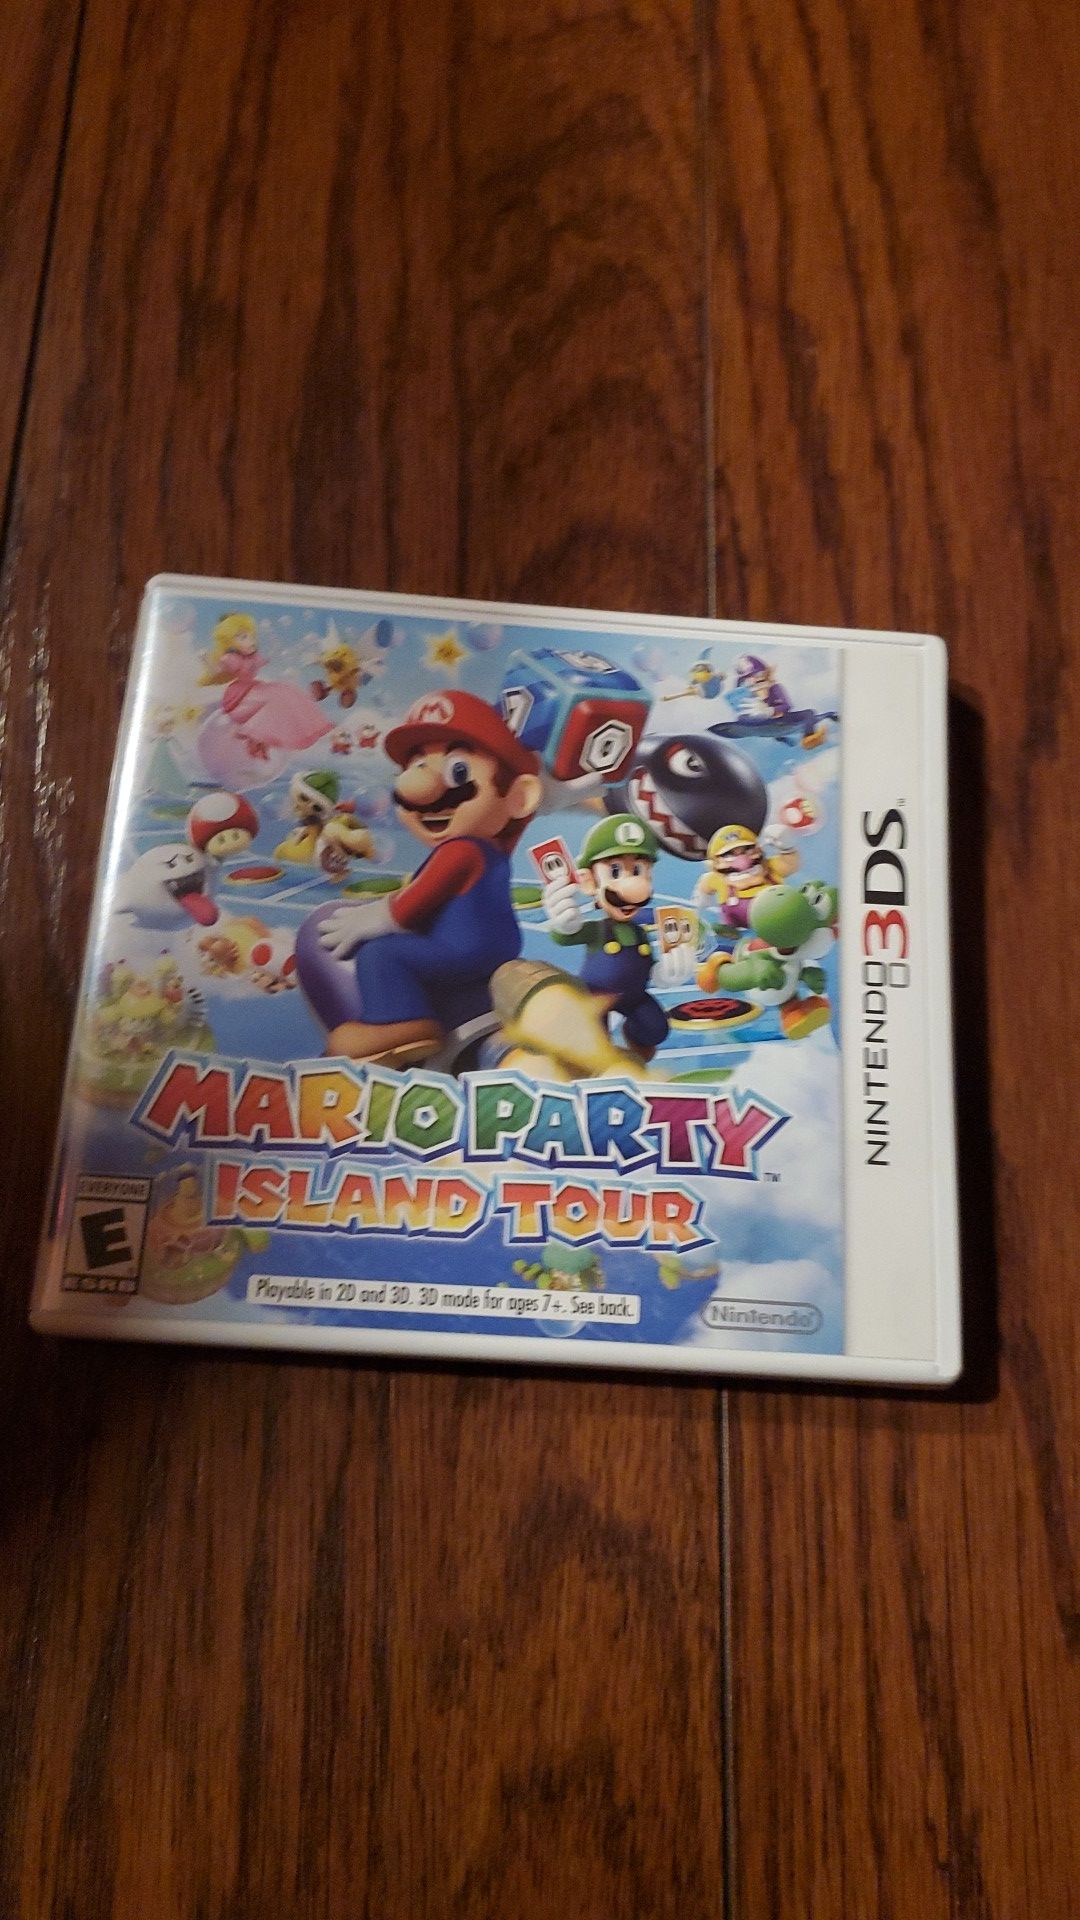 Mario party game